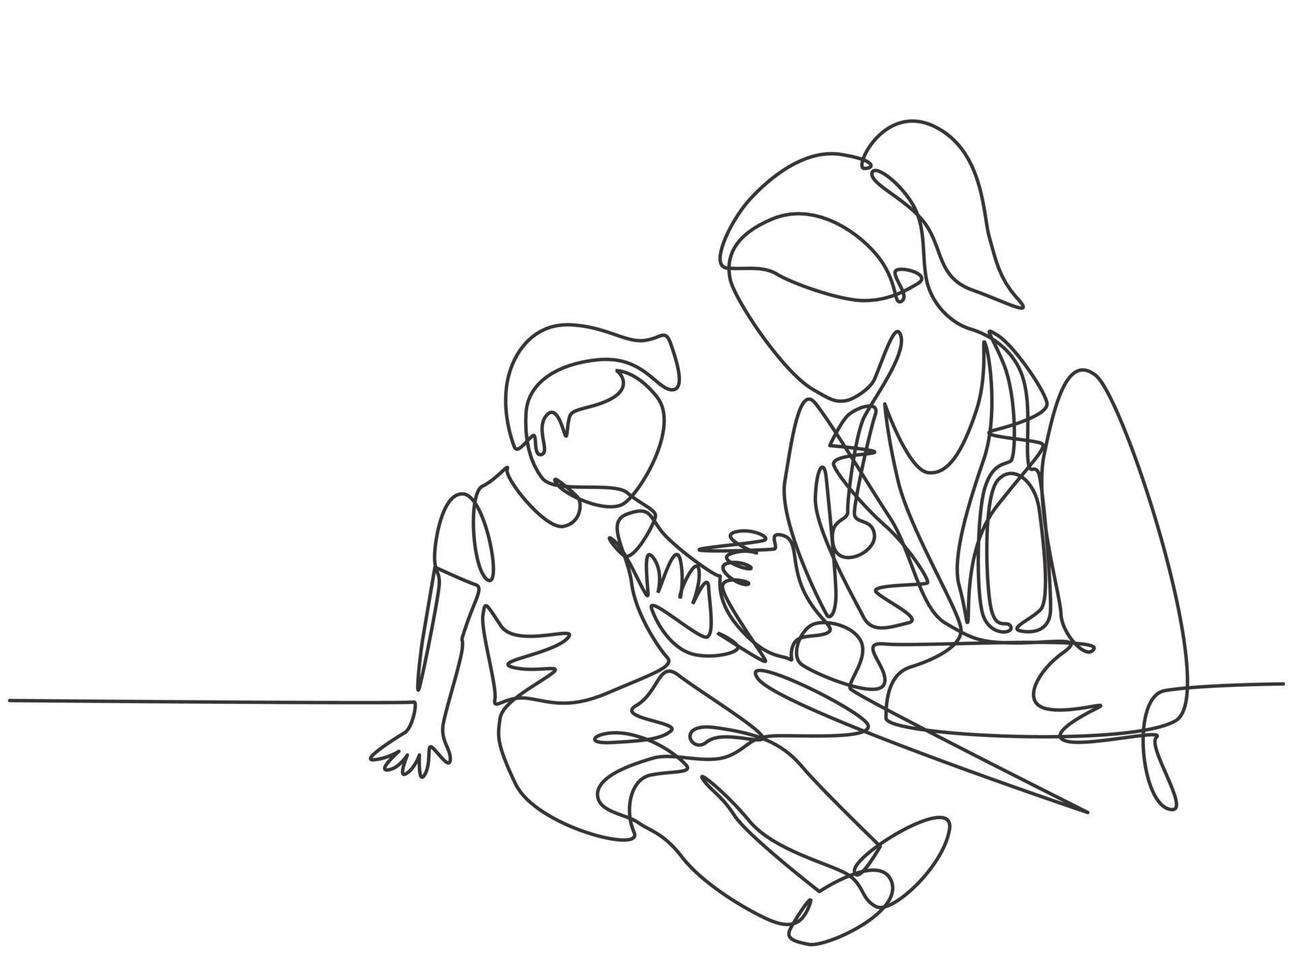 dibujo de línea continua única de una doctora pediatra que administra la inyección de inmunización de la vacuna a un paciente joven. Concepto de tratamiento de atención médica médica ilustración de vector de diseño de dibujo de una línea